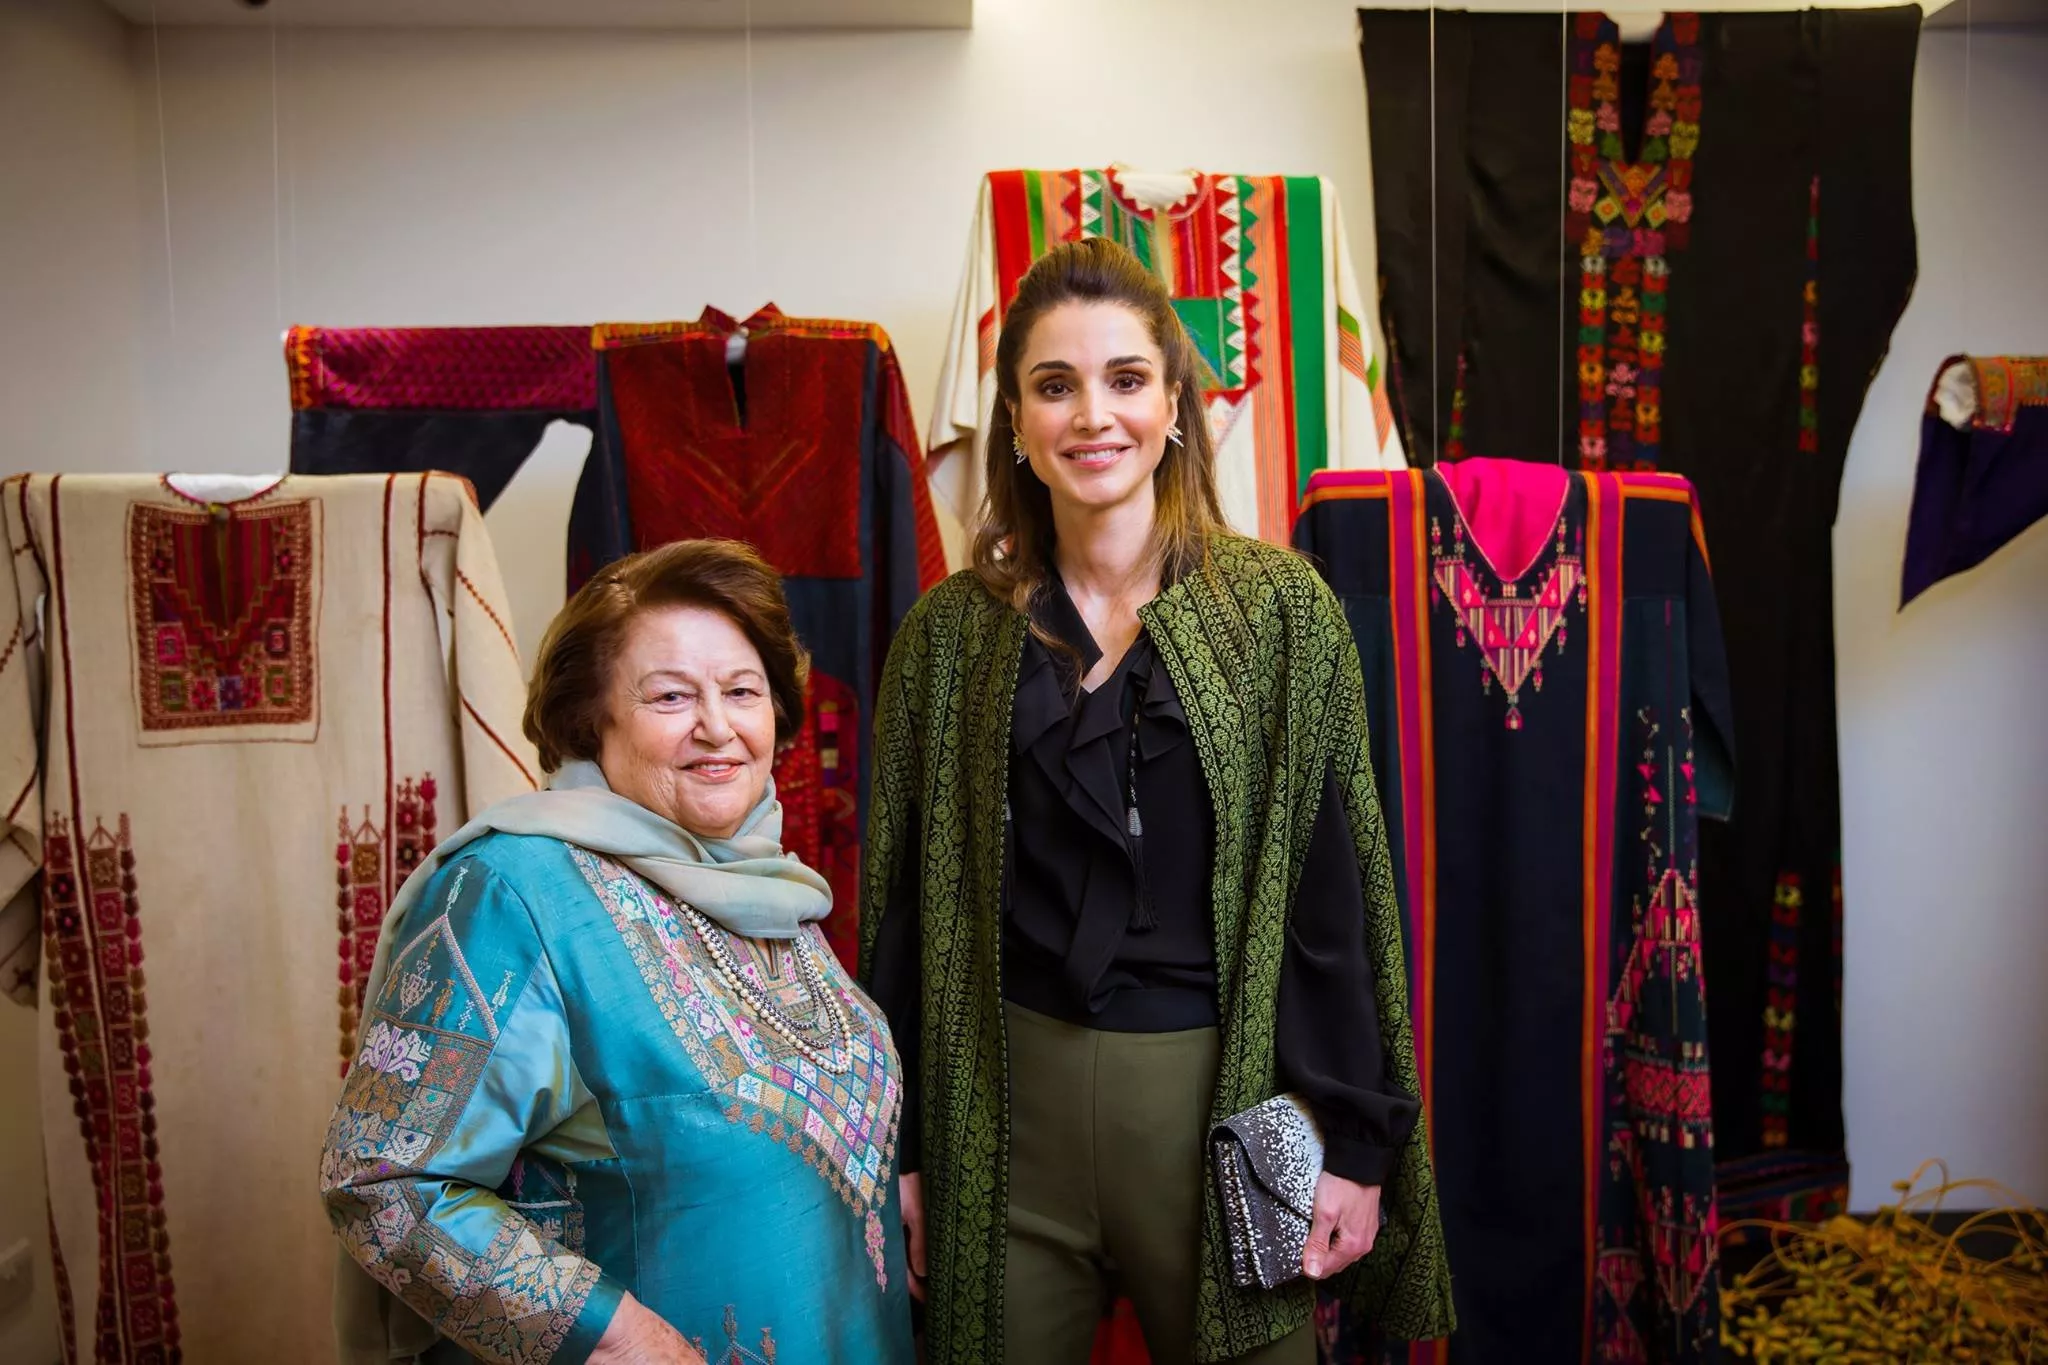 الملكة رانيا تمزج بين الأزياء التقليديّة وأسلوبها العصريّ بنجاح